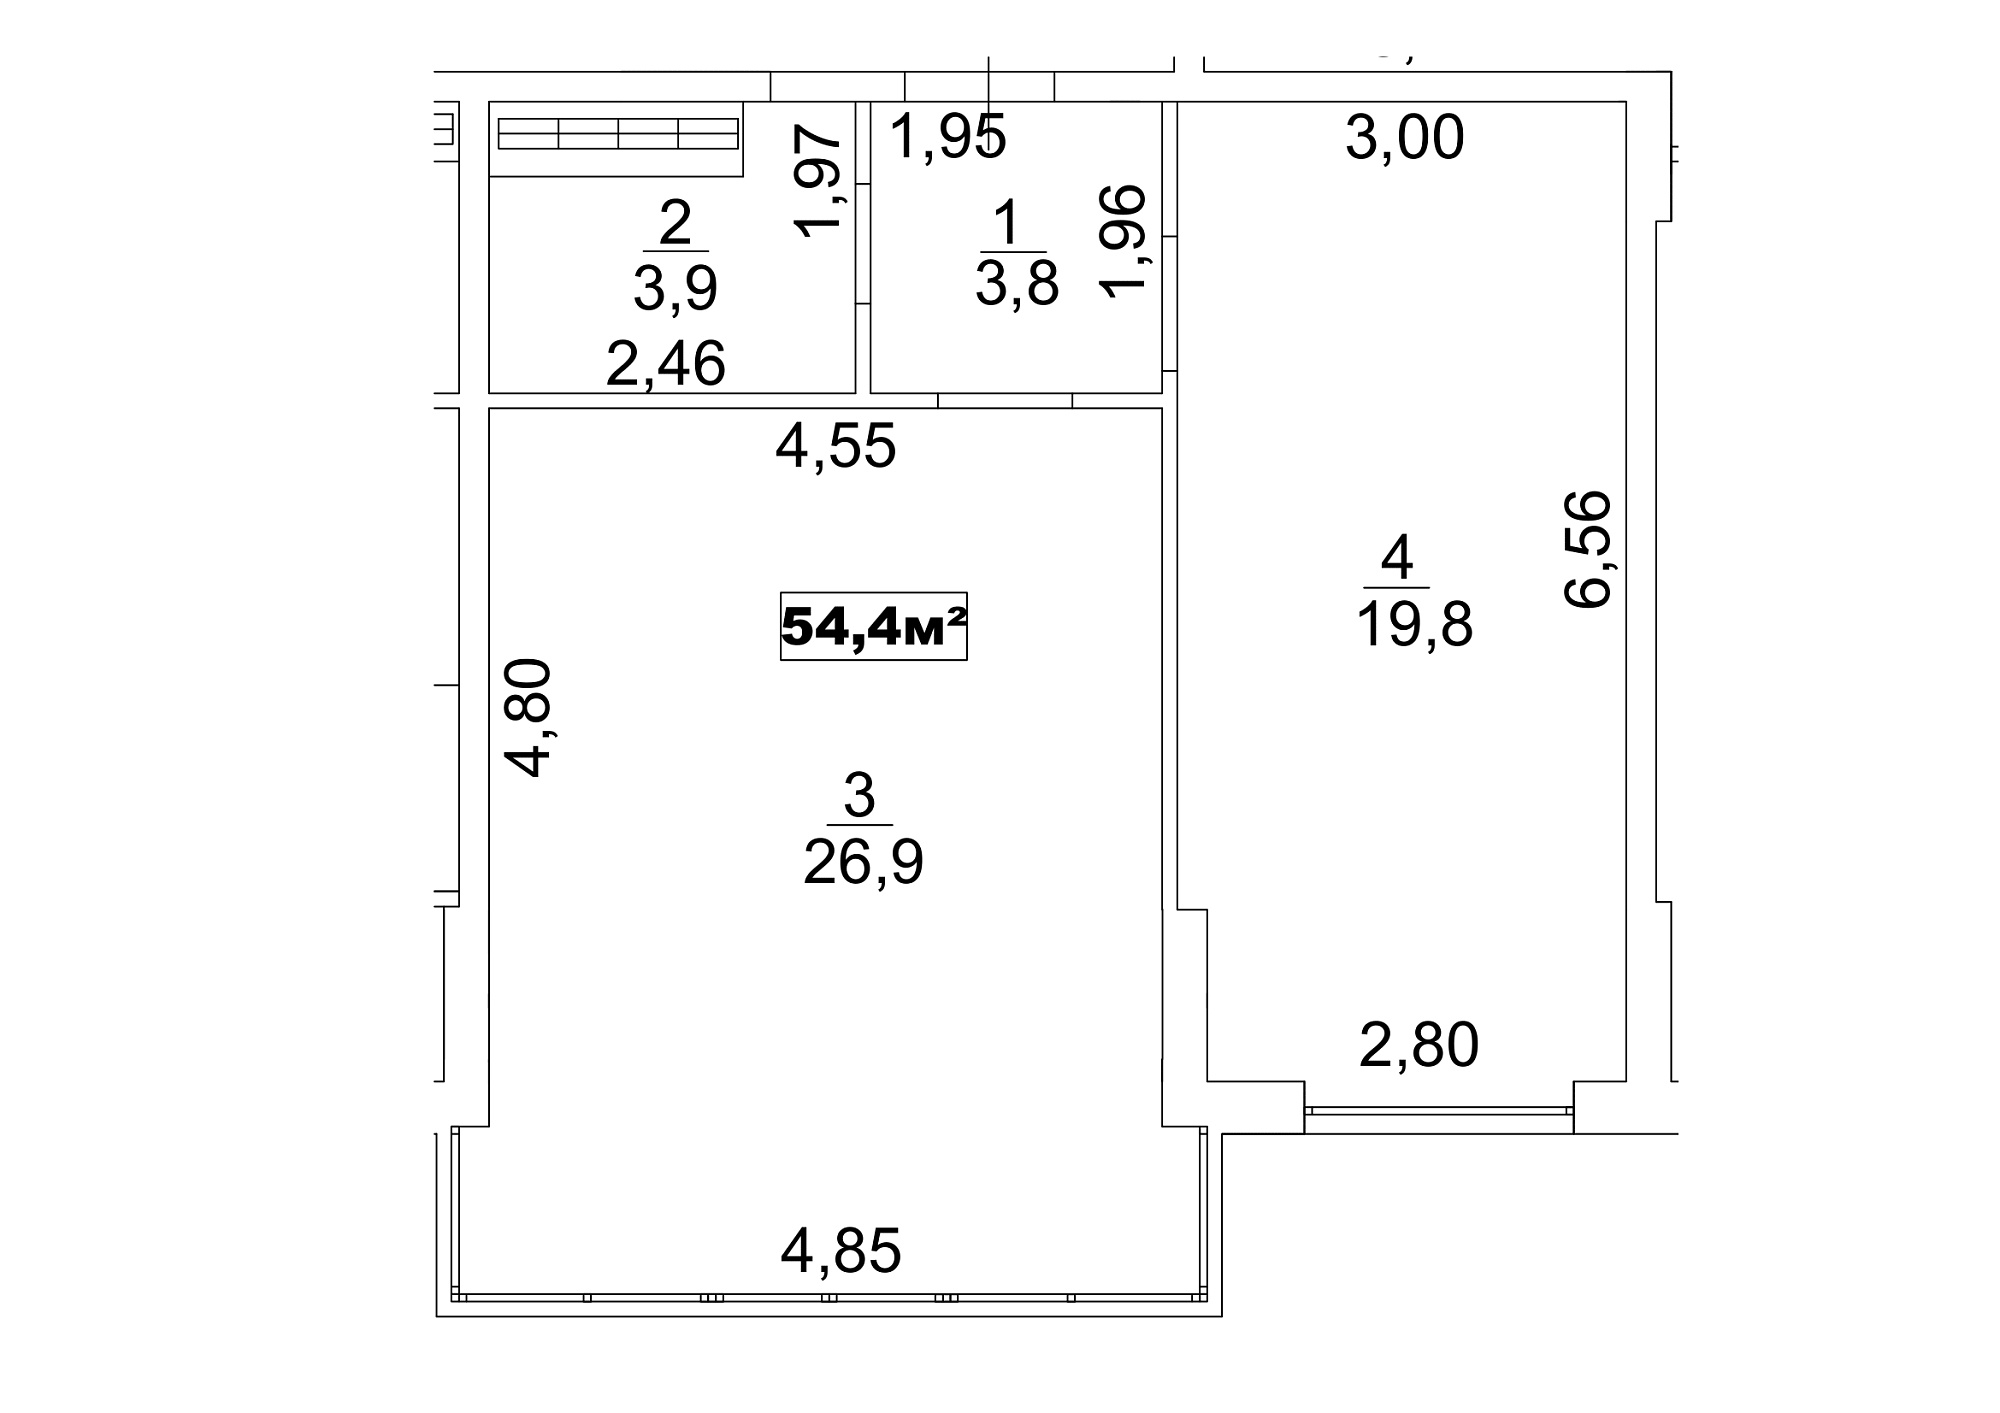 Планировка 1-к квартира площей 54.4м2, AB-13-07/00059.